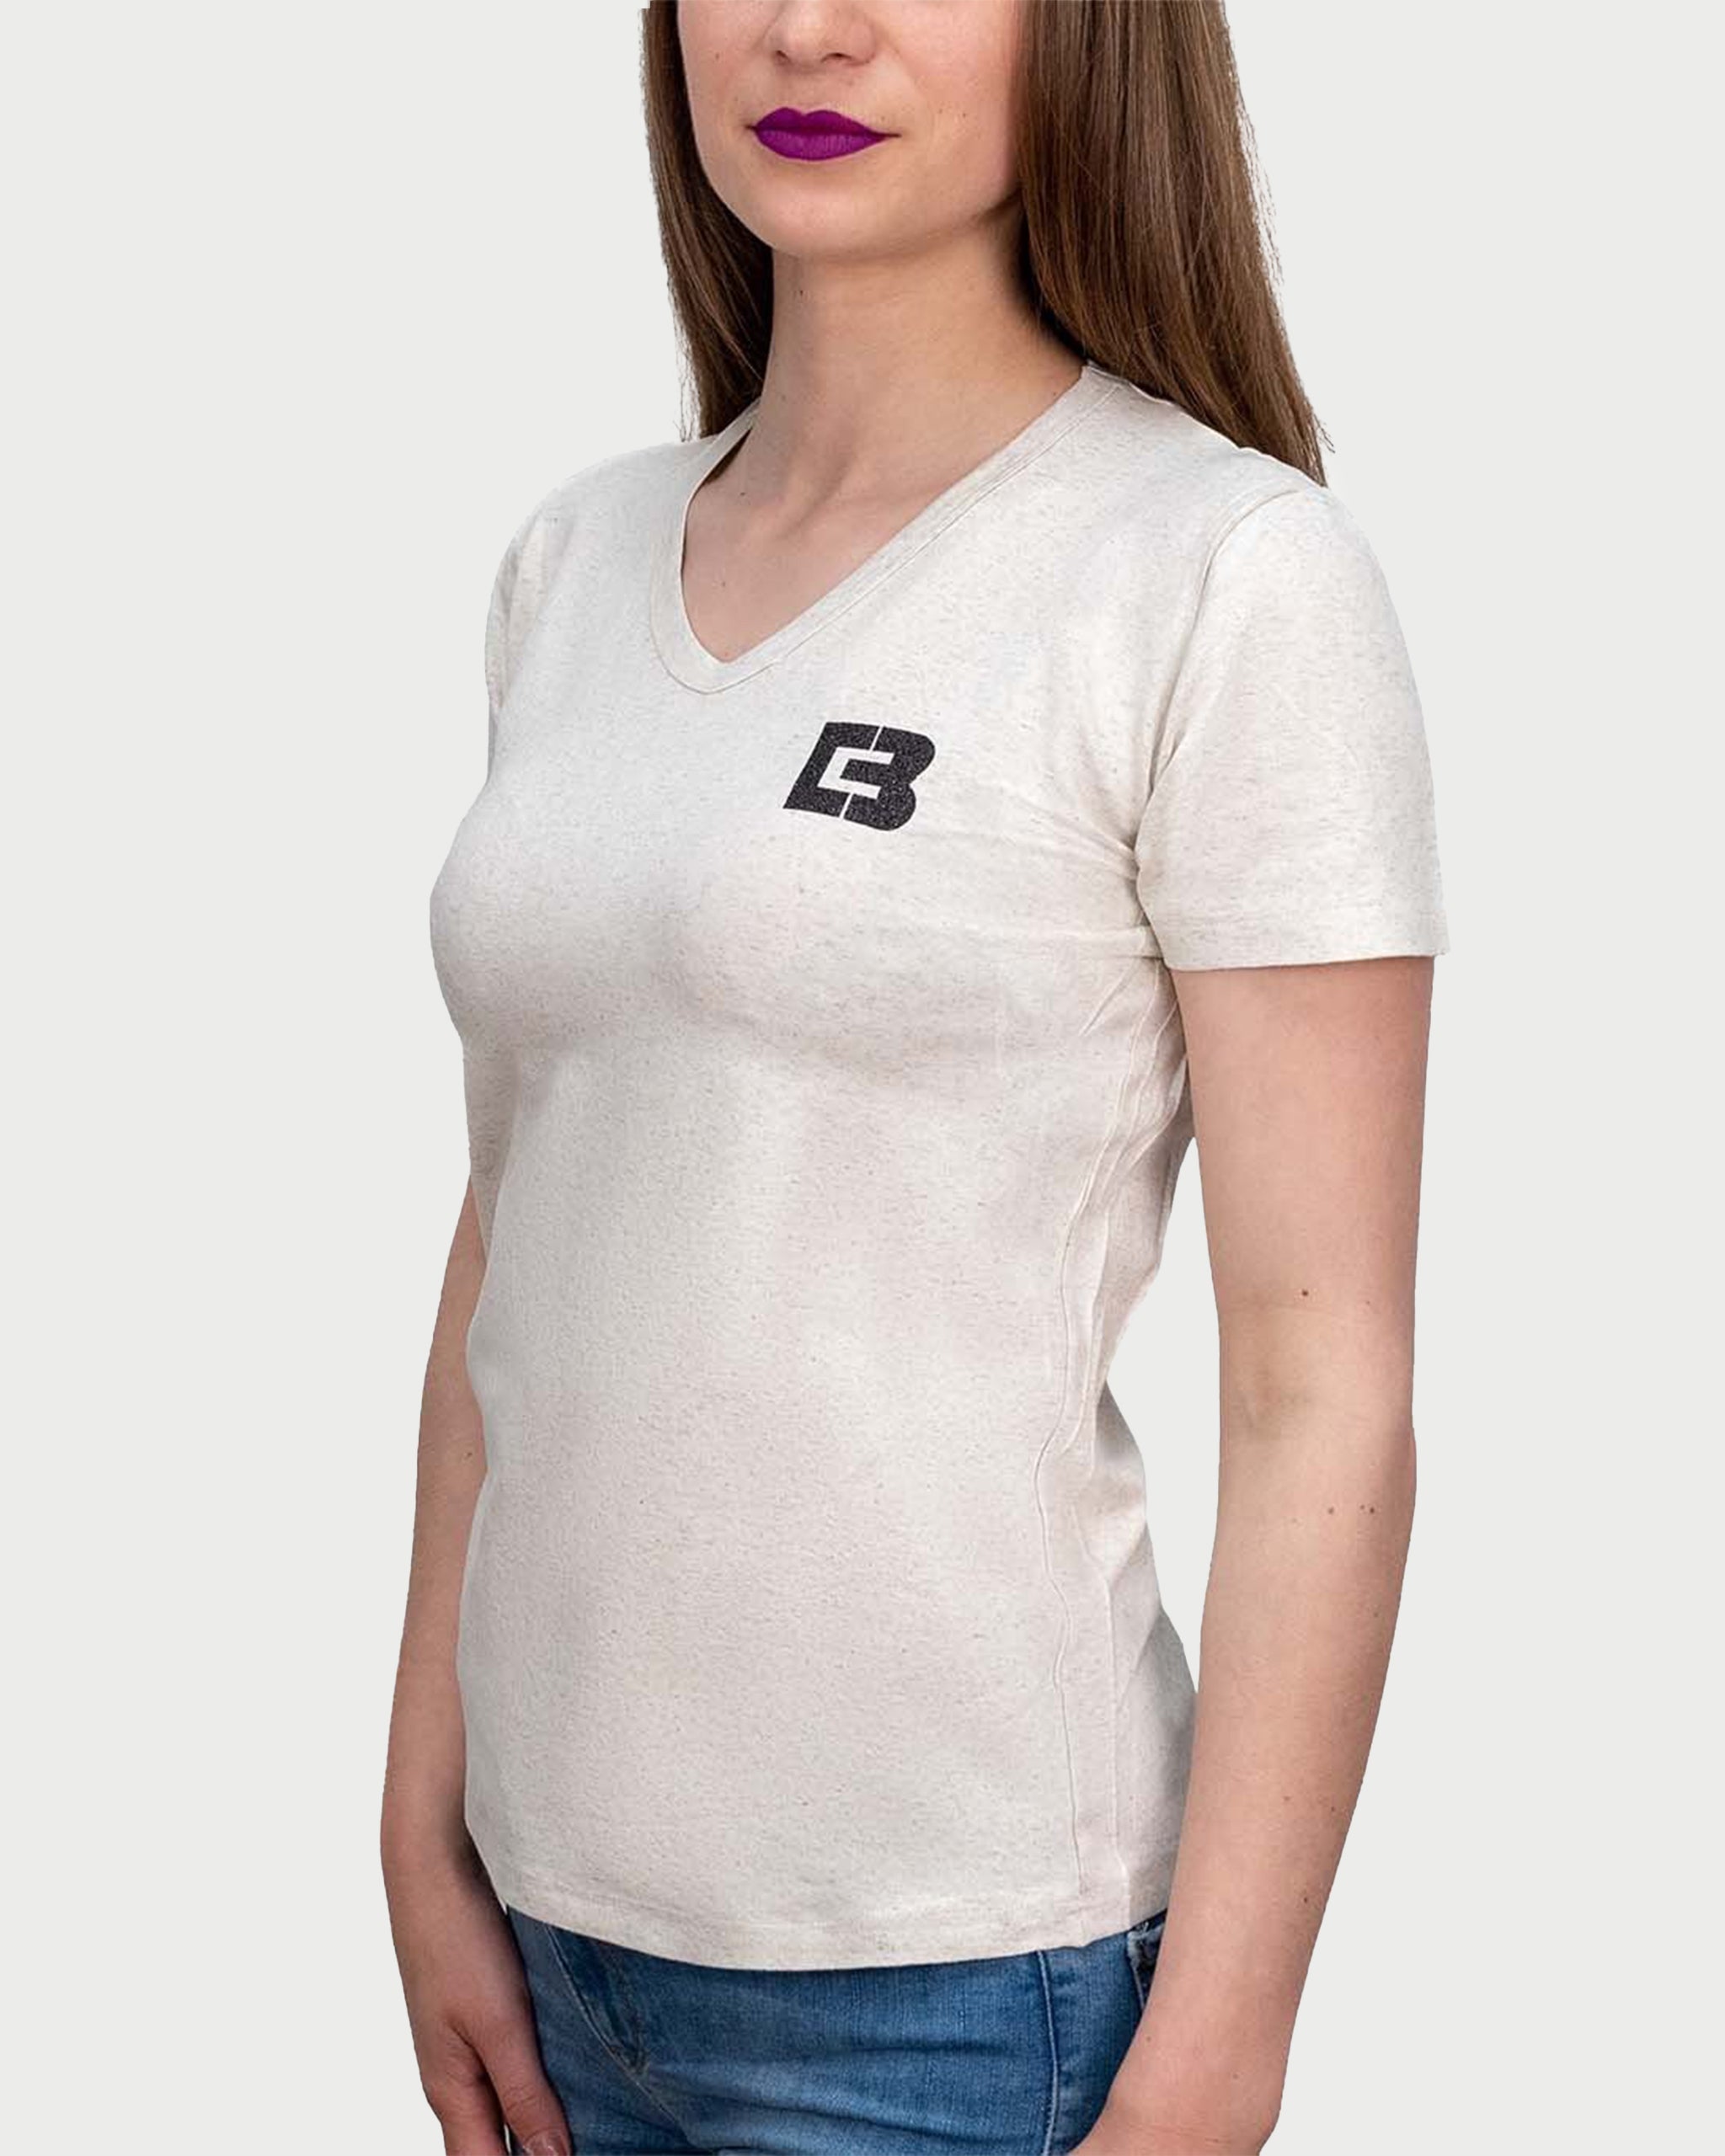 CREAM SENSATION - tricou minimalist pentru femei